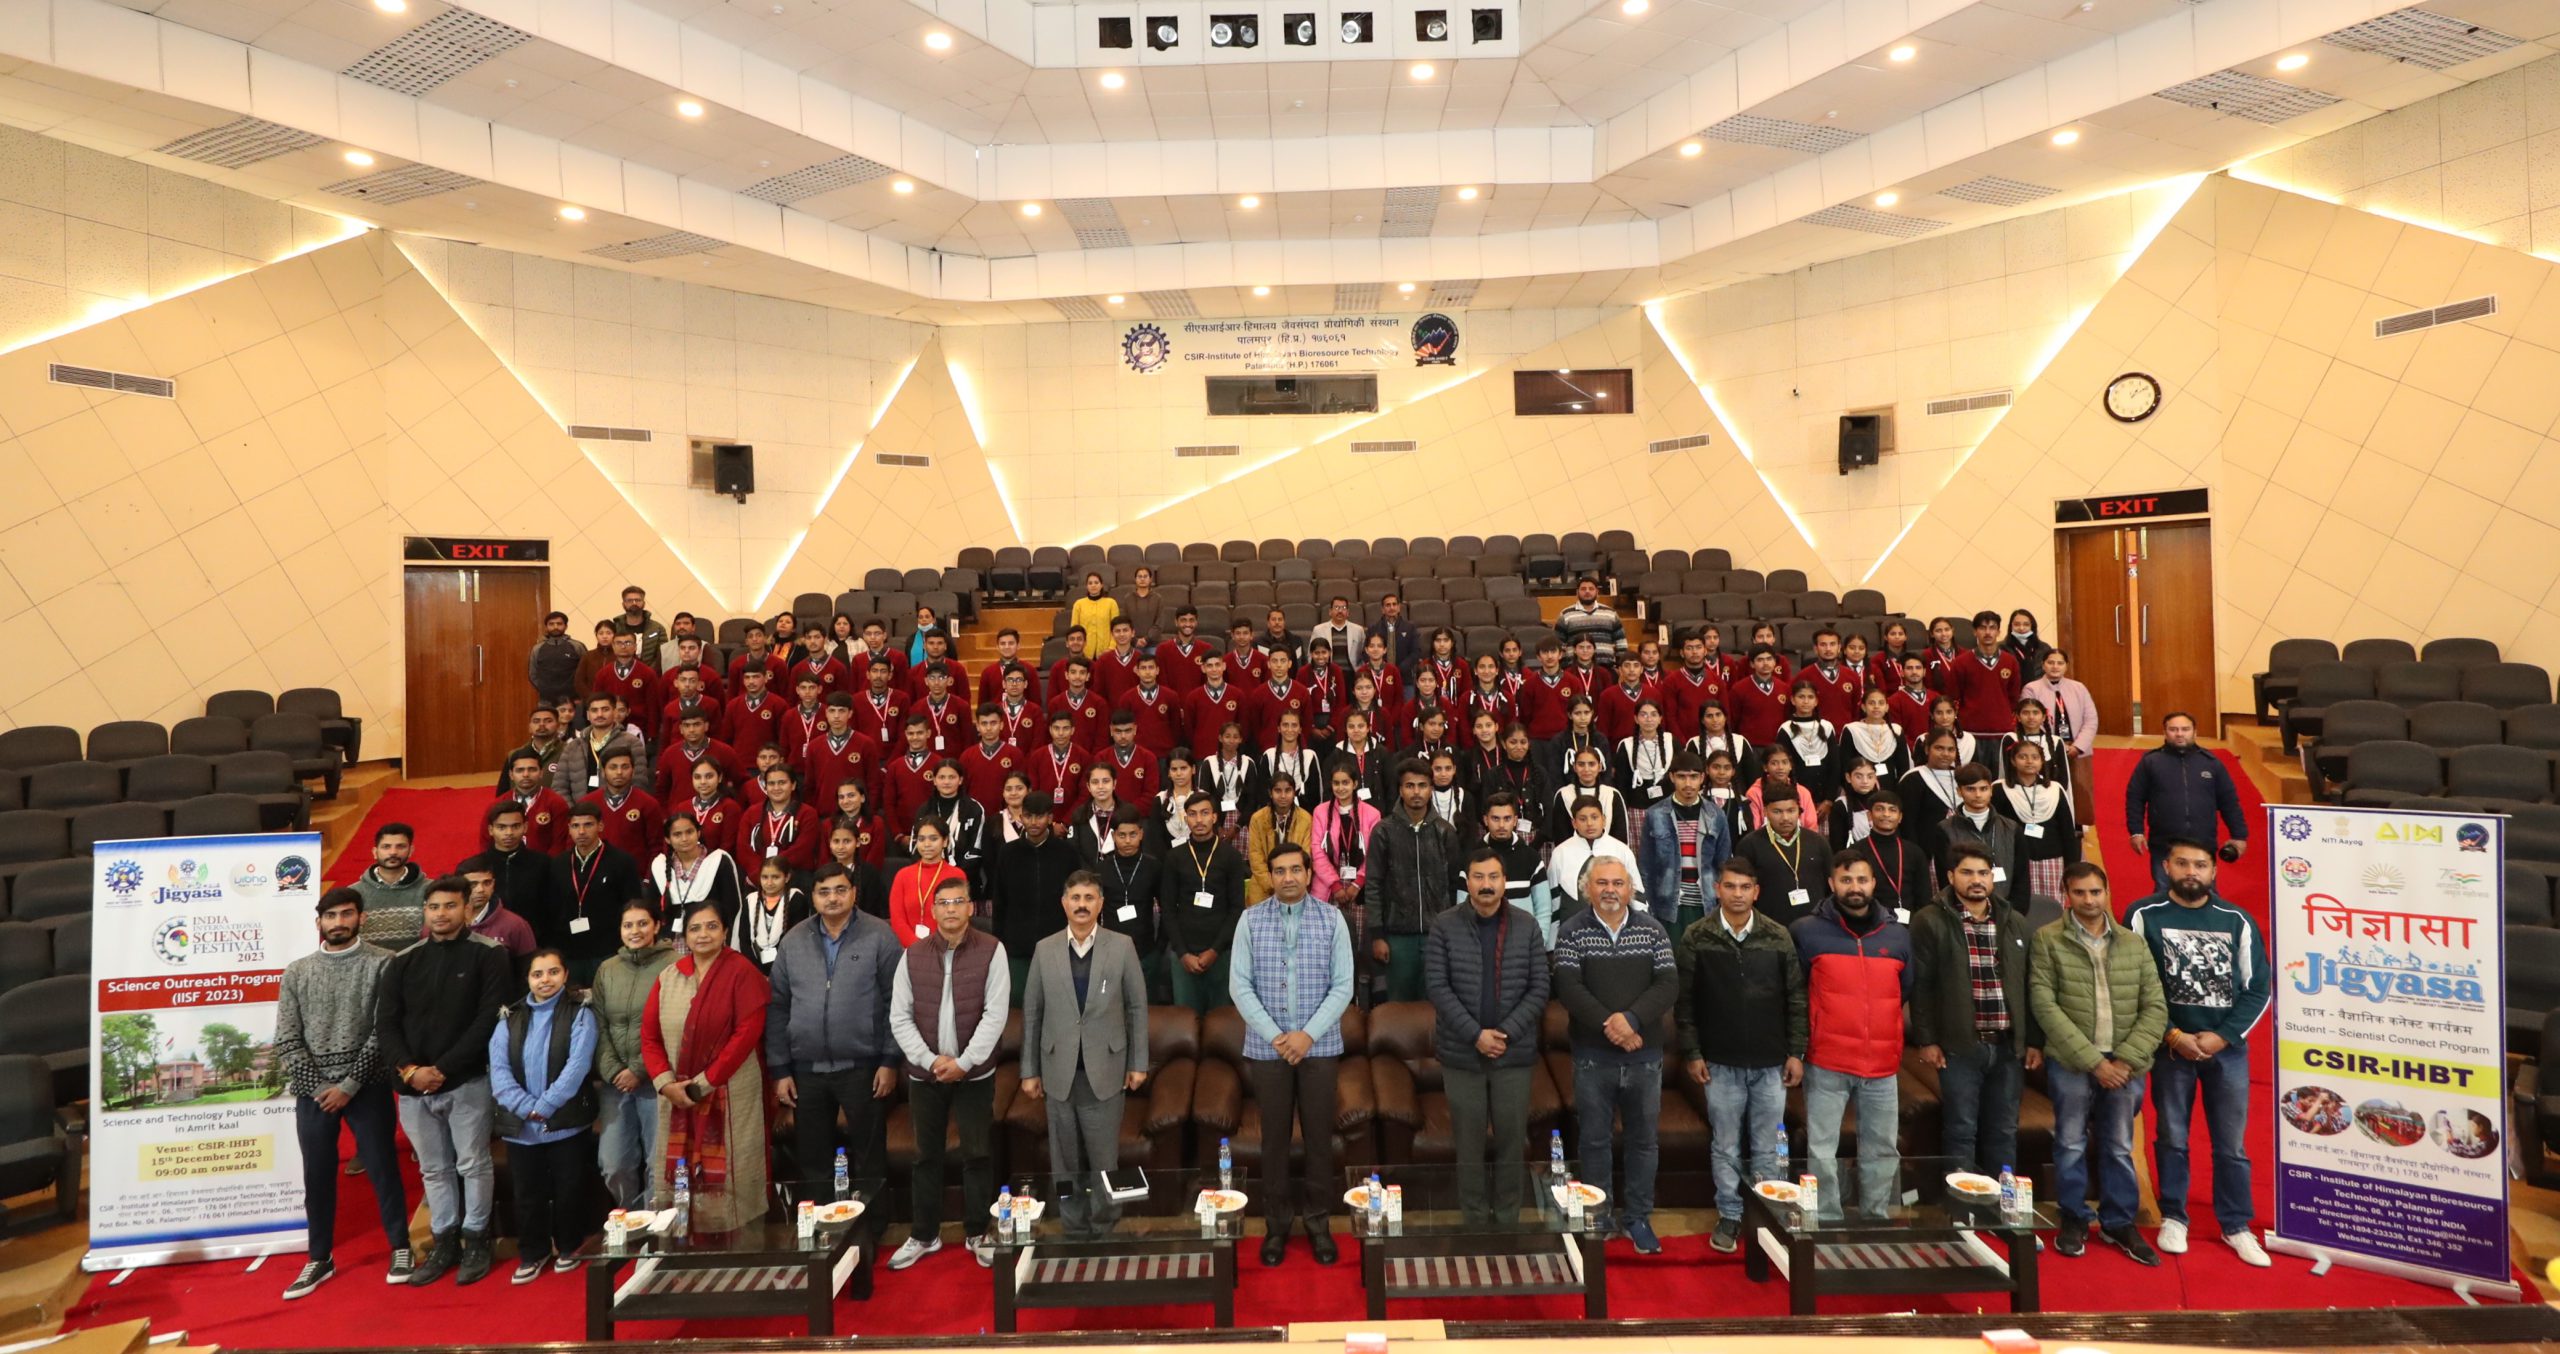 सीएसआईआर-आईएचबीटी में 9वां भारतीय अंतर्राष्ट्रीय विज्ञान उत्सव कर्टेन रेज़र का आयोजन